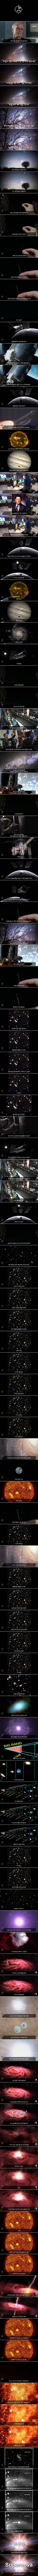 허블망원경으로 우주 끝을 촬영하면 보이는 것 | 인스티즈